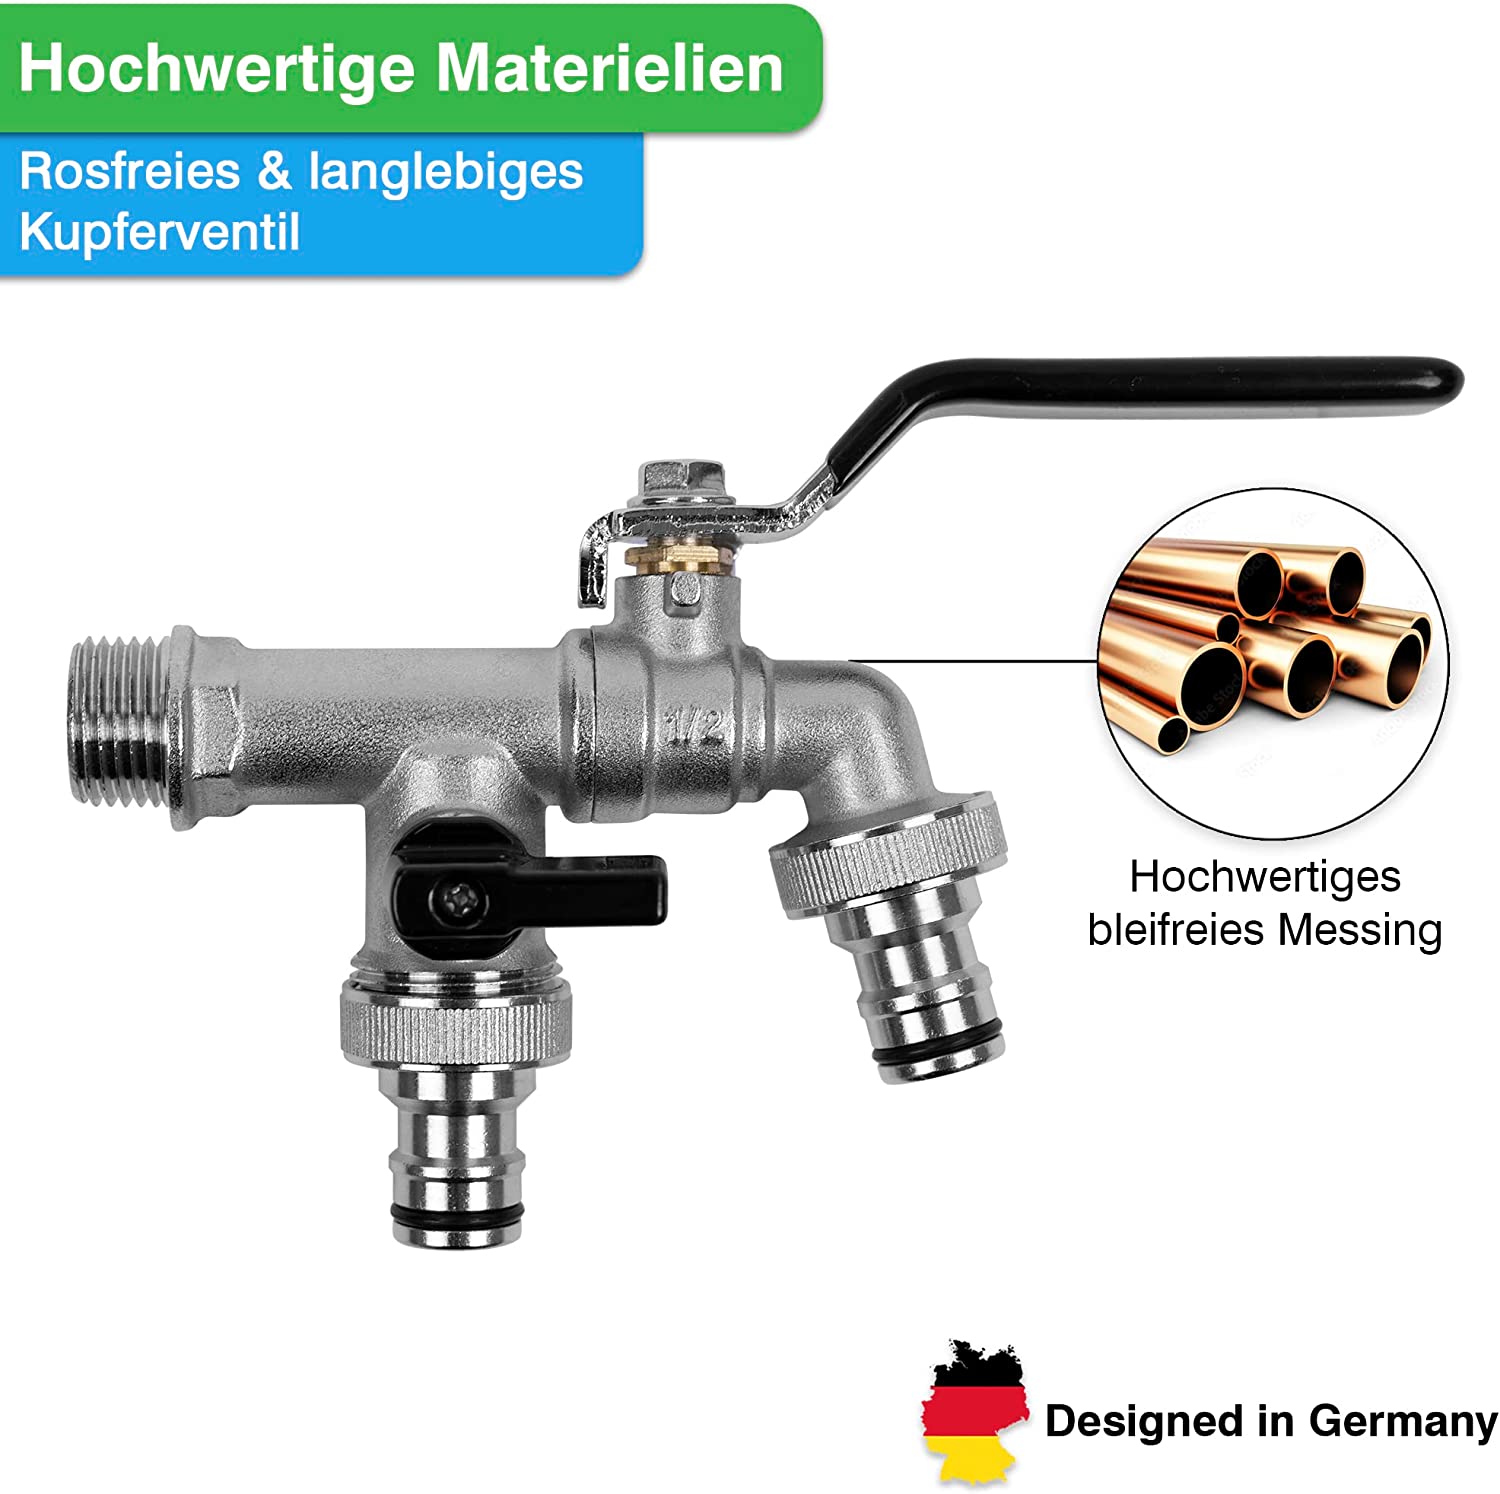 Robuster YourCasa® Regentonnen-Kugelhahn aus Messing mit Hebelgriff, Schlauchanschlüssen und der Kennzeichnung „Designed in Germany“.